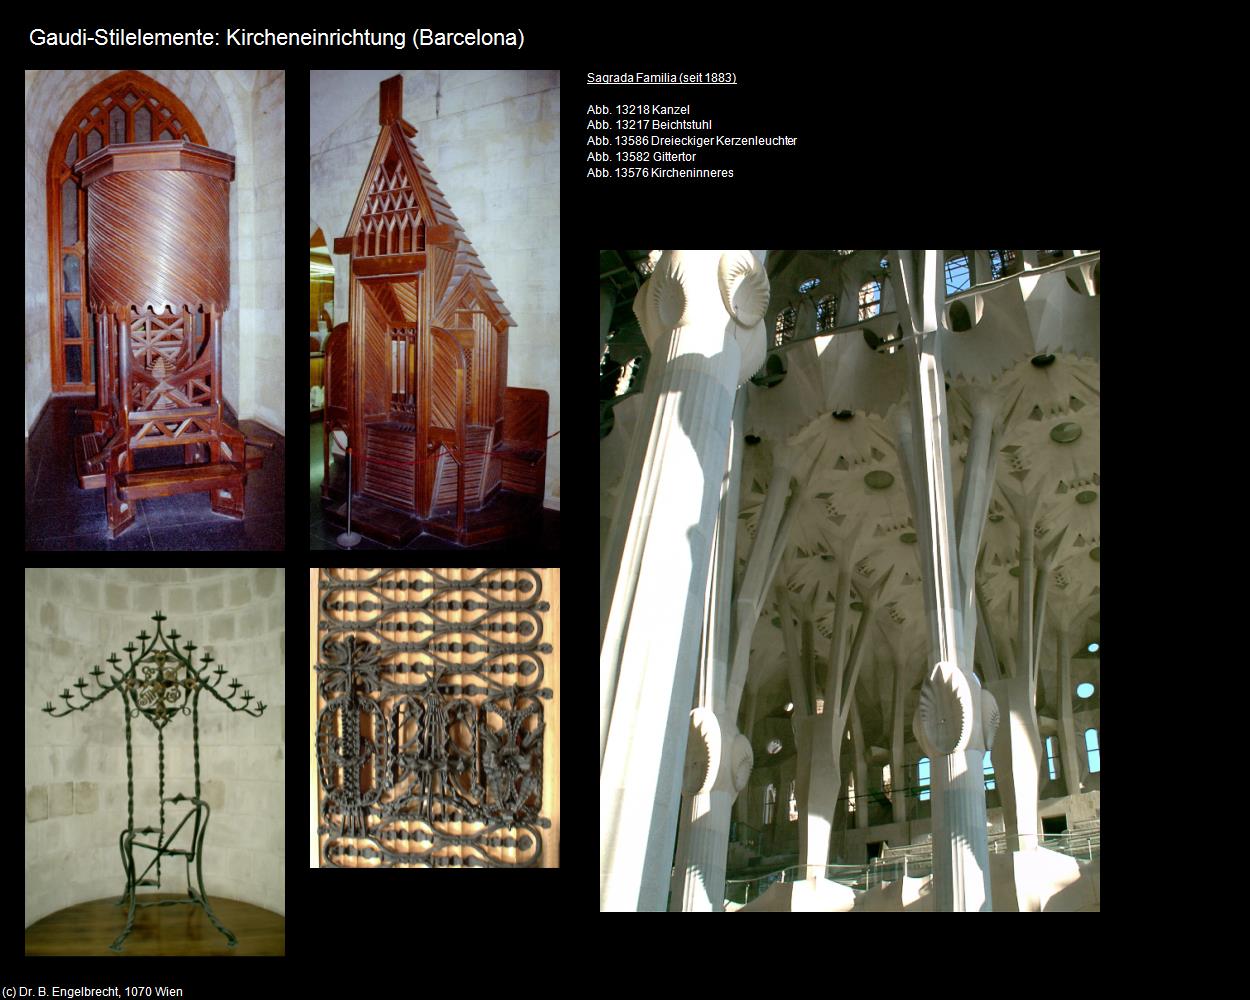 Gaudi-Stilelemente: Kircheneinrichtung (Barcelona) in KATALONIEN(c)B.Engelbrecht